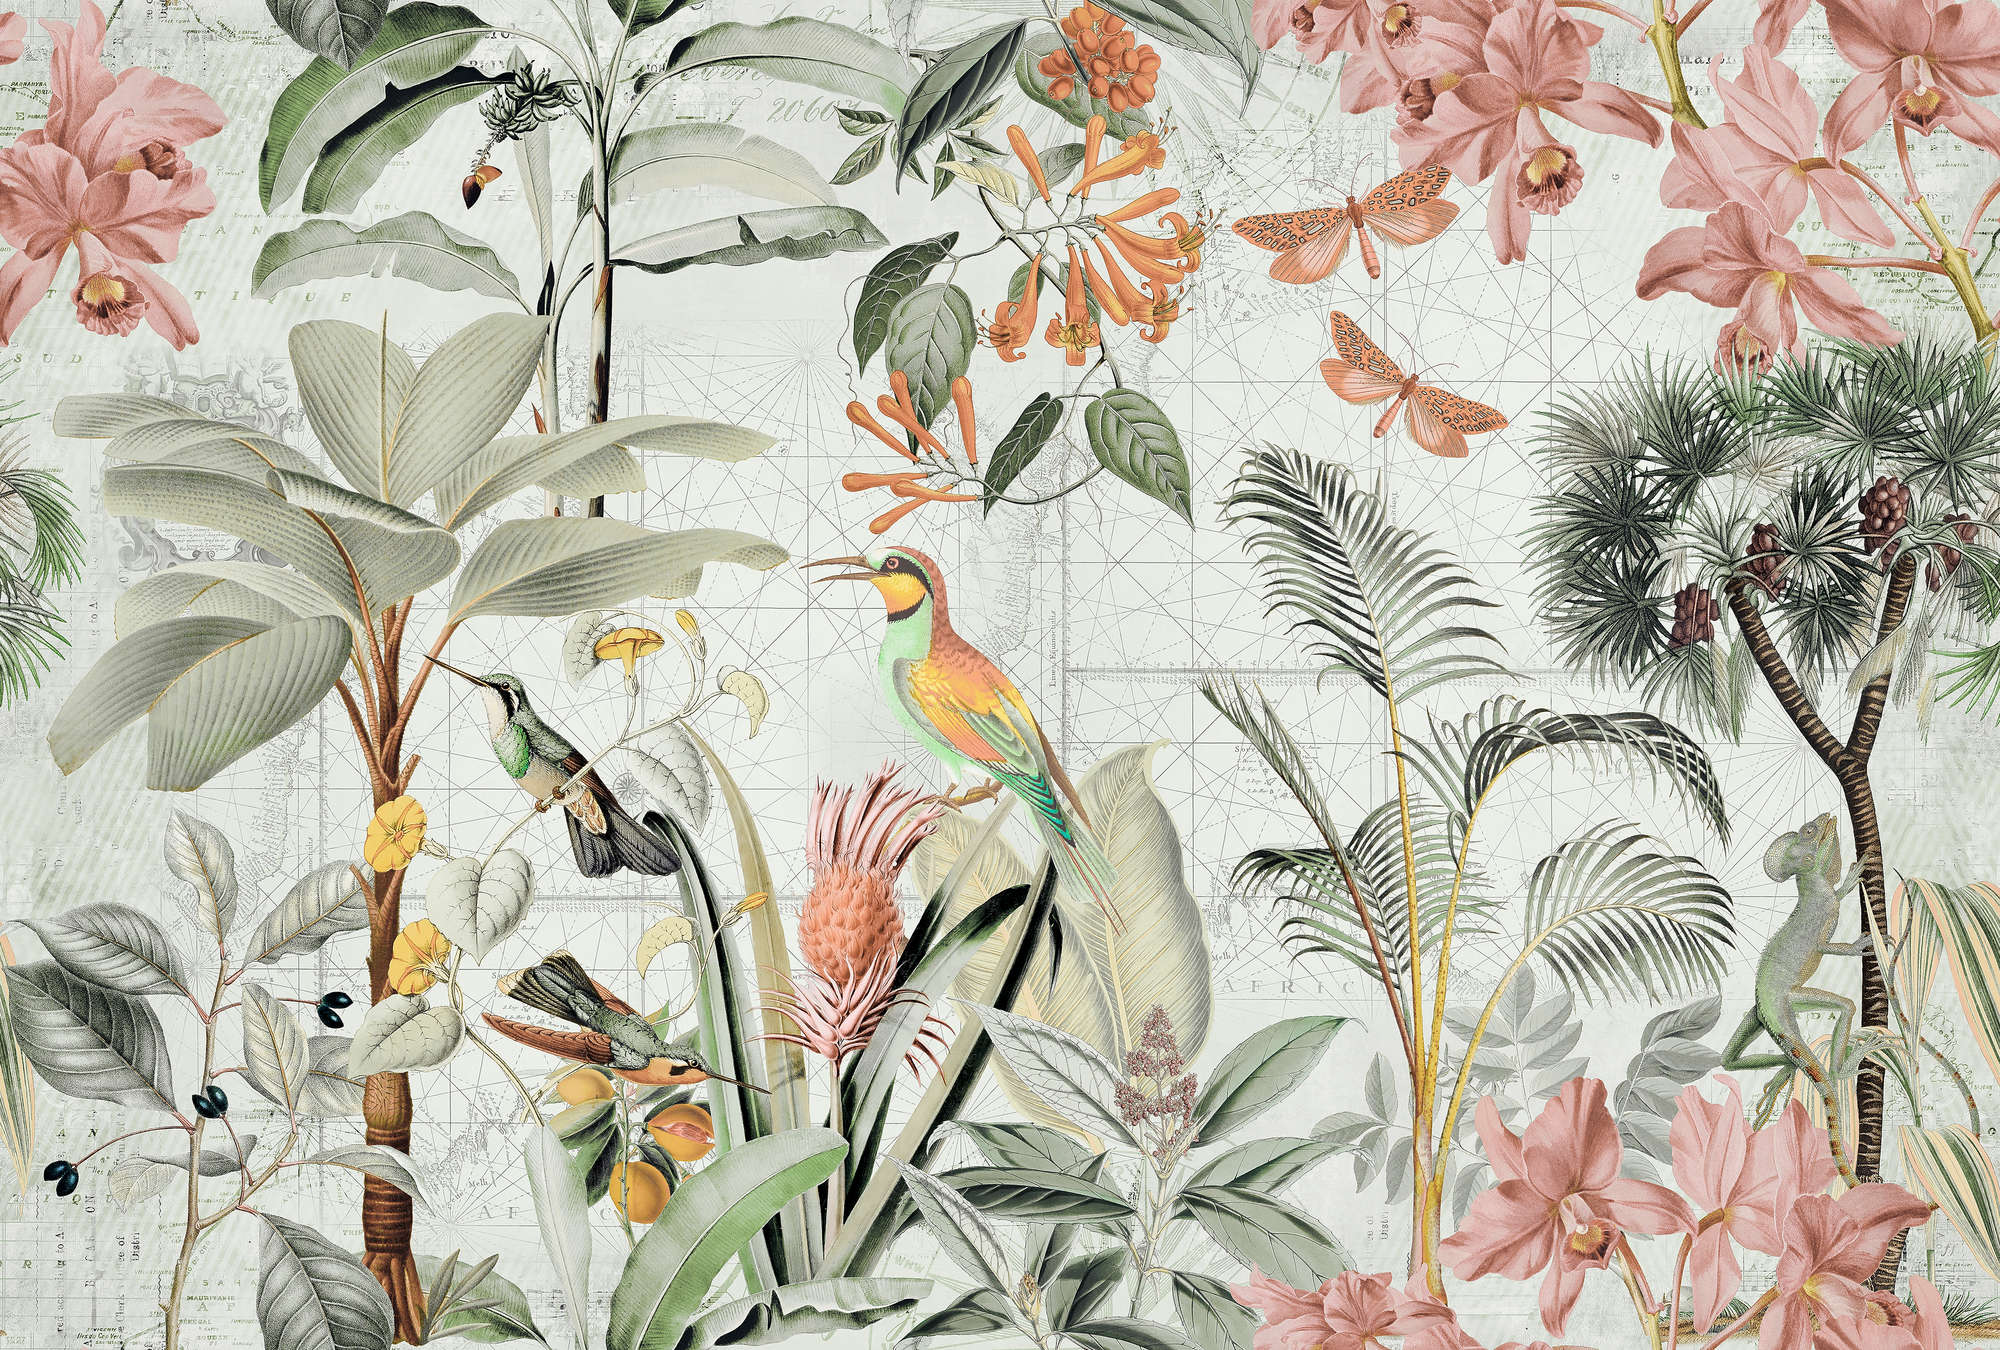             Muurschildering Jungle Collage met Tropische Bloemen & Vogels
        